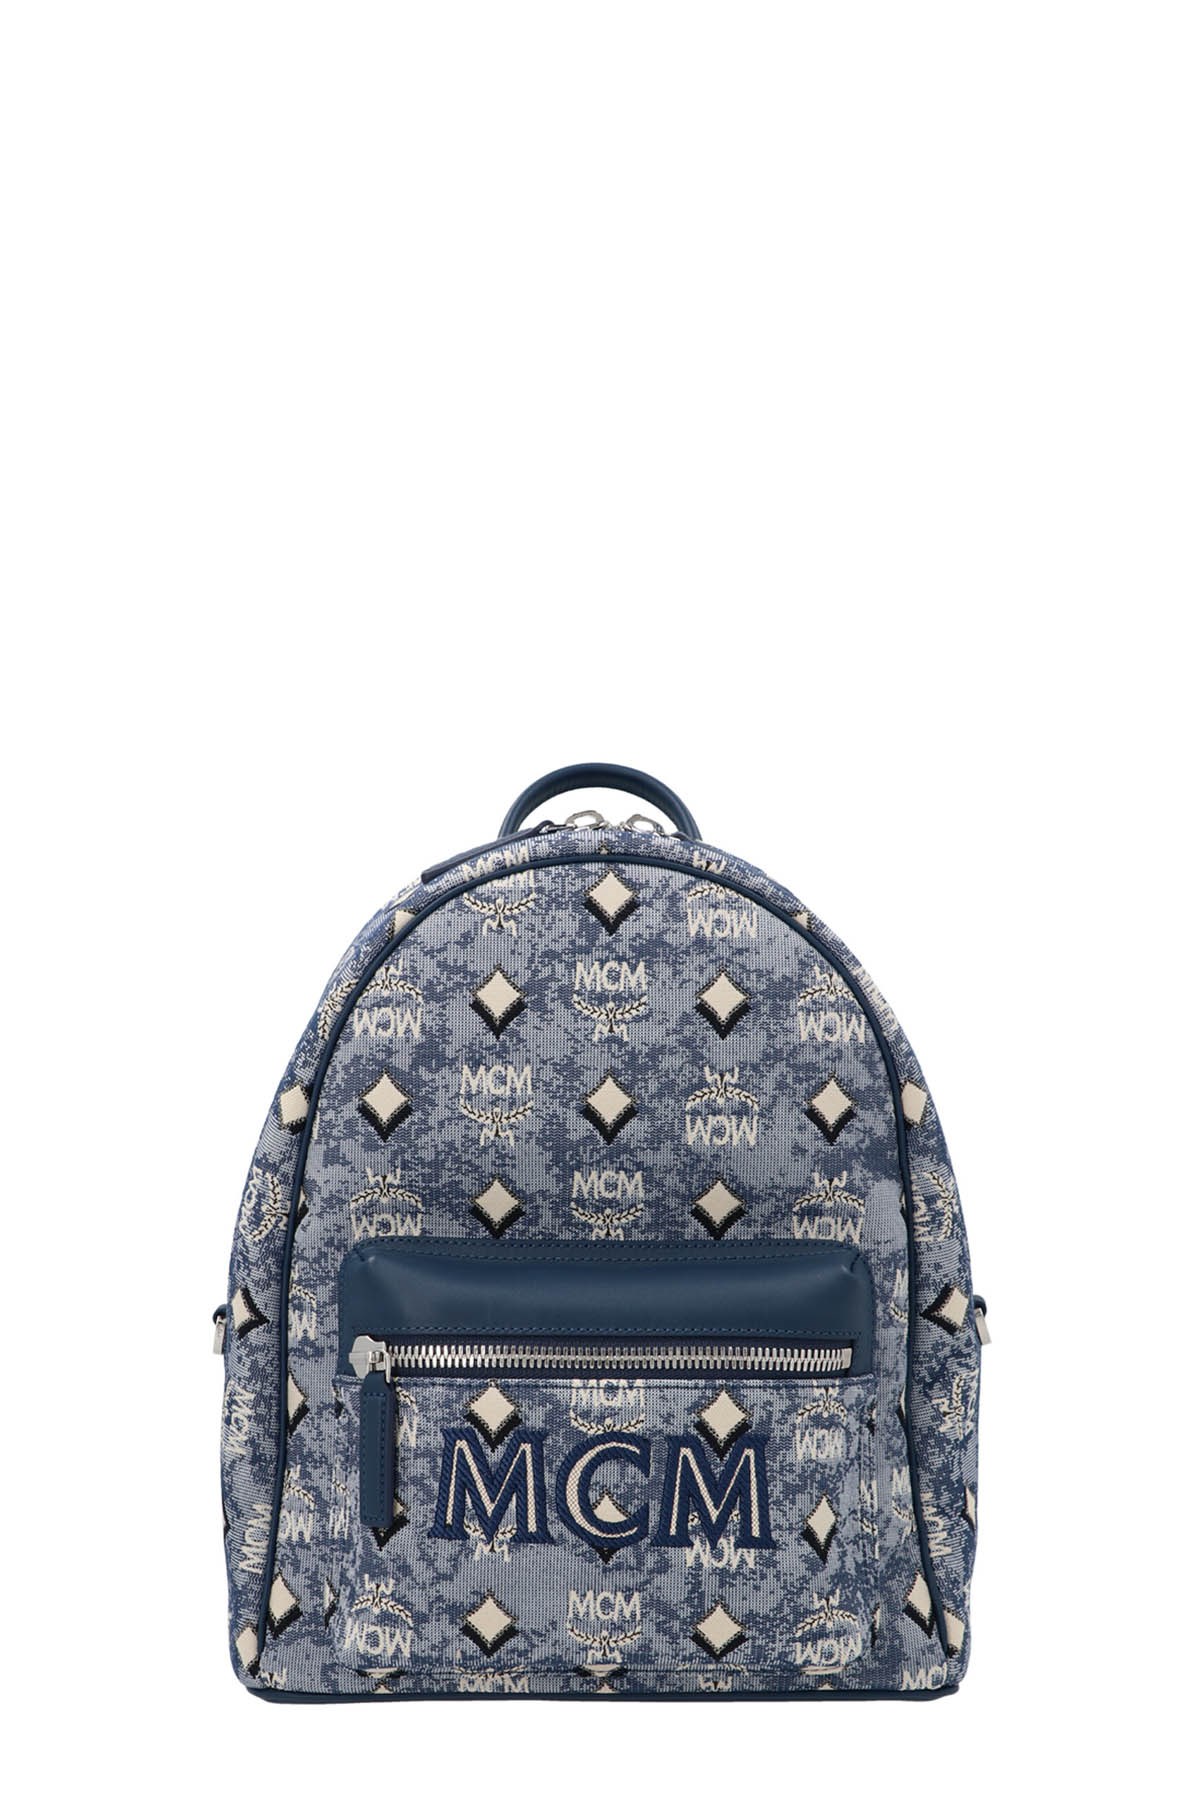 MCM 'Vintage Jacquard’ Backpack